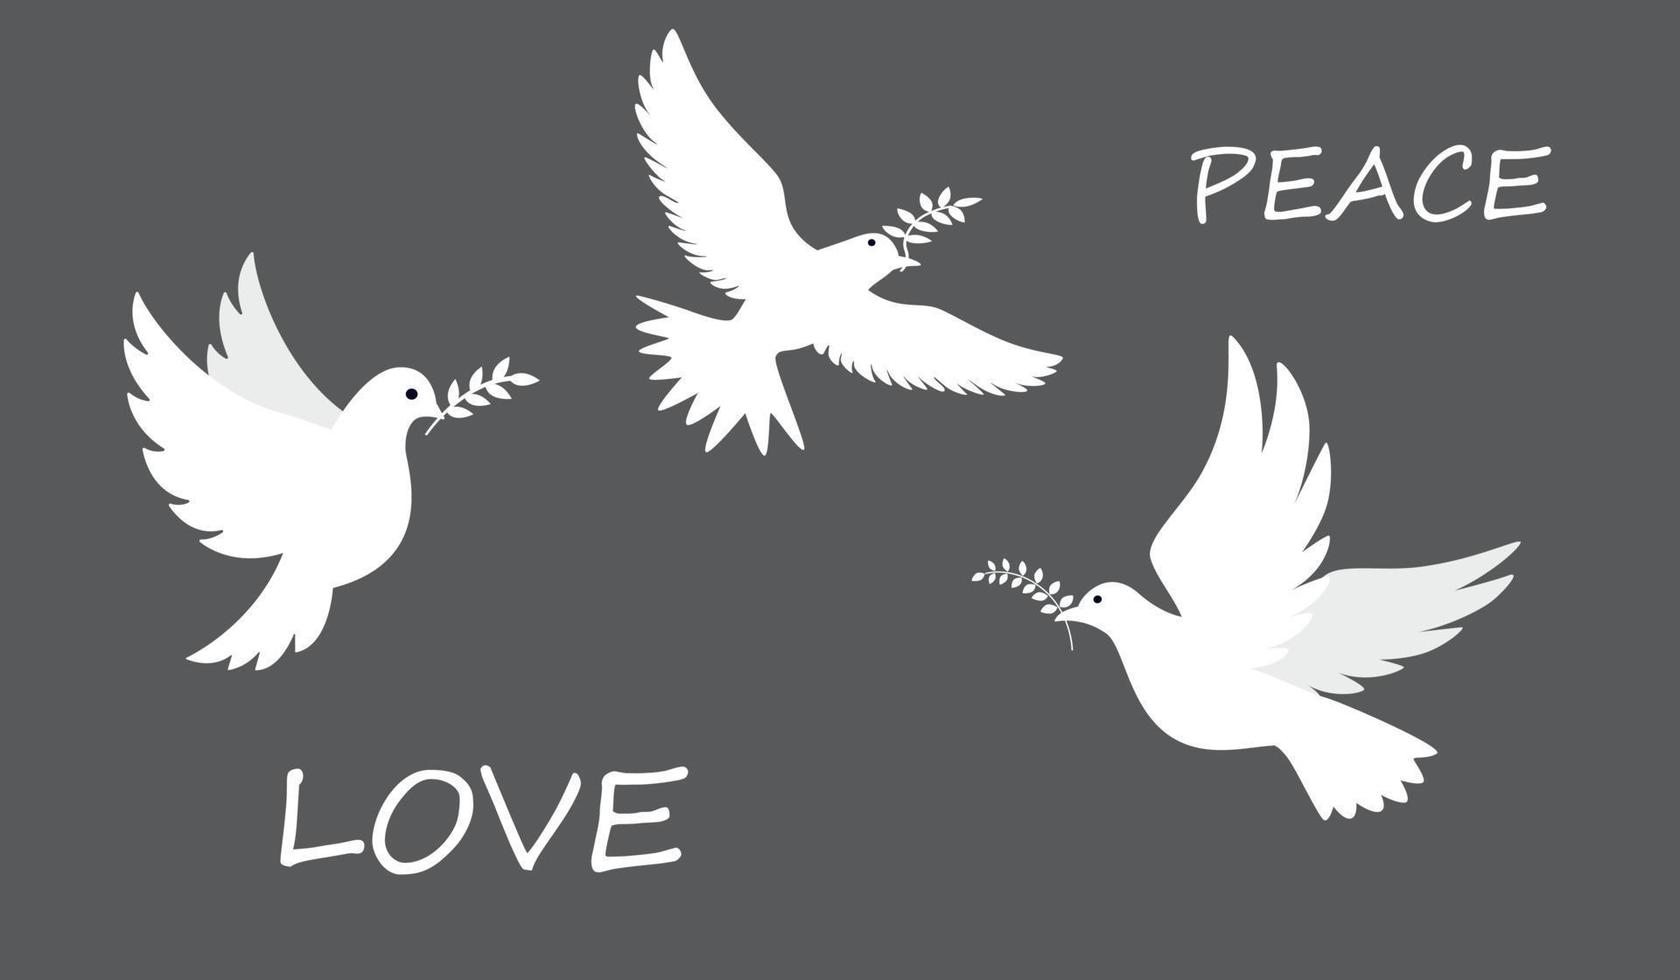 pomba da paz. pássaros voando e em pé com ramos de oliveira. paz e amor, liberdade, sem conceito de guerra. mão desenhada ilustração vetorial moderna. todos os elementos são isolados vetor